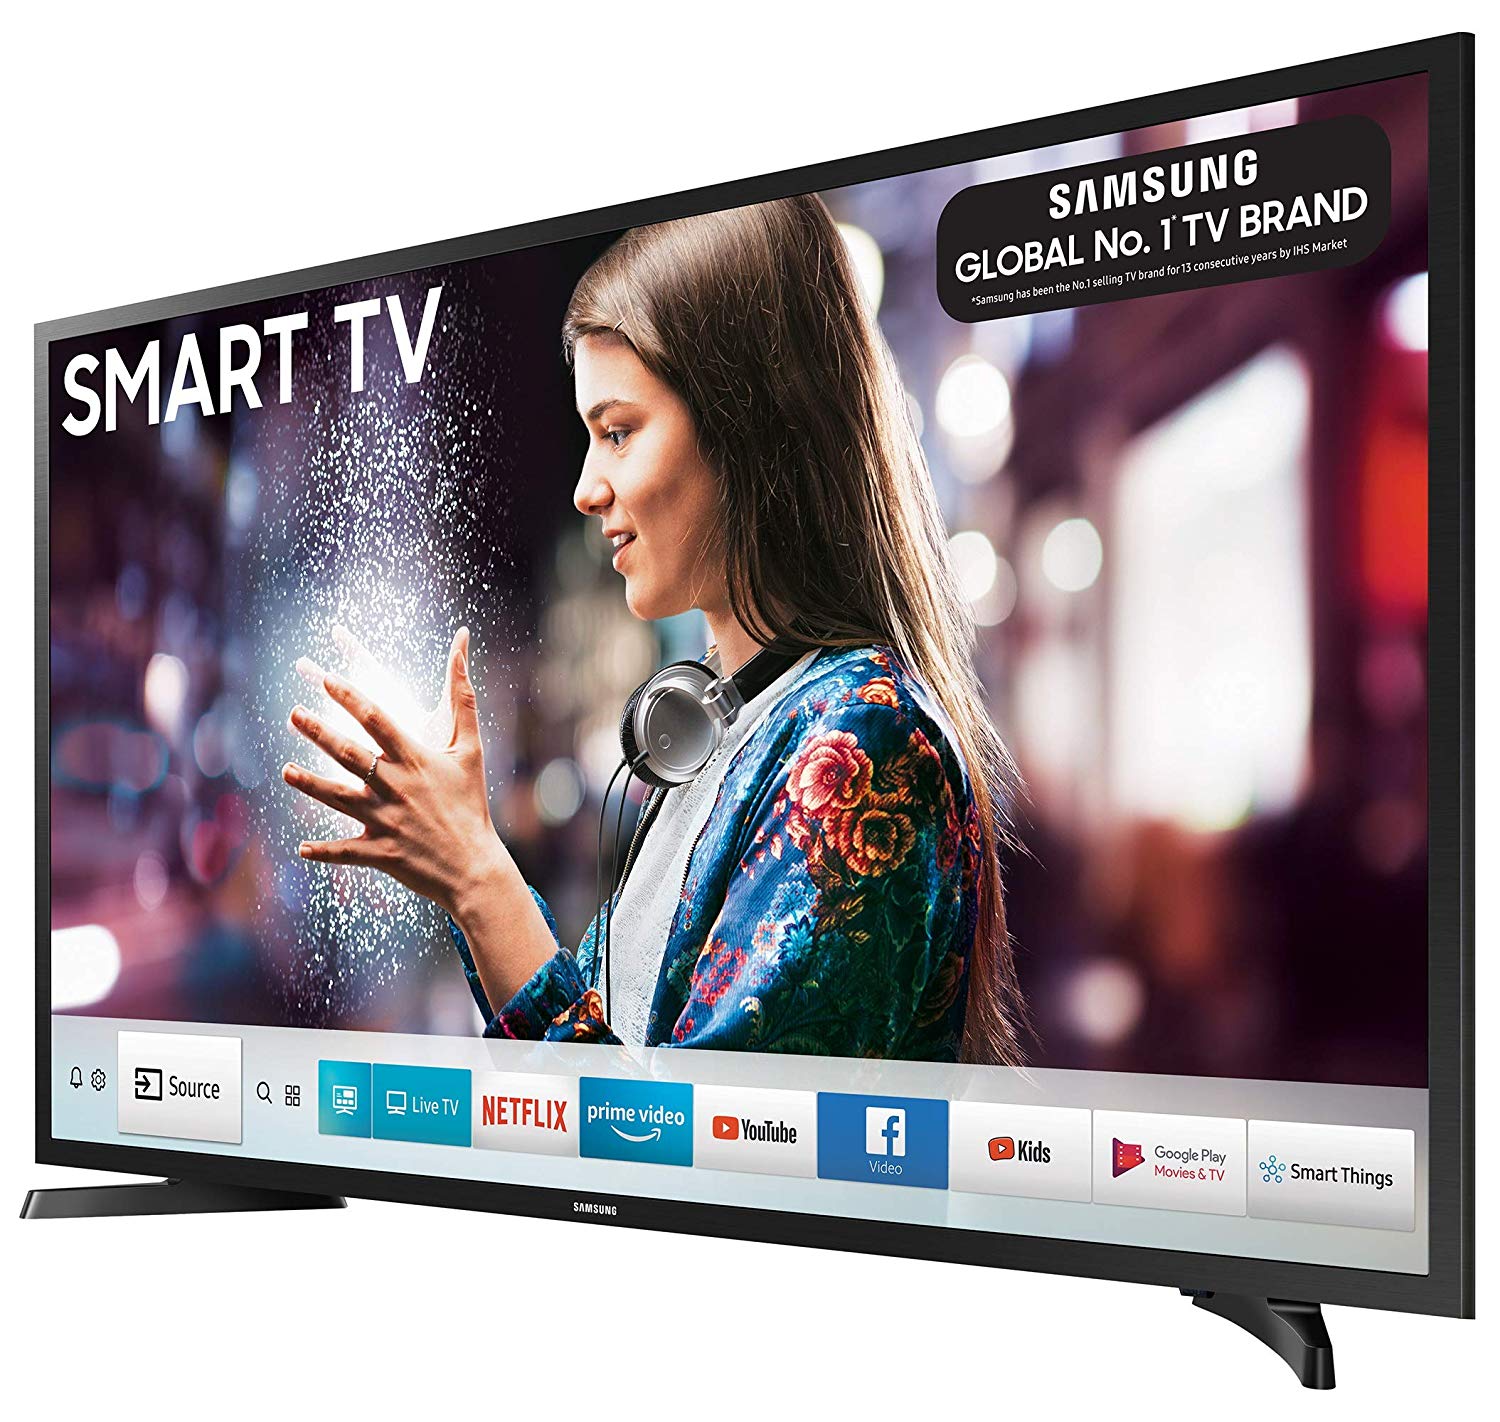 Samsung Smart TV – An Excellent Entertainment Gadget | Technology